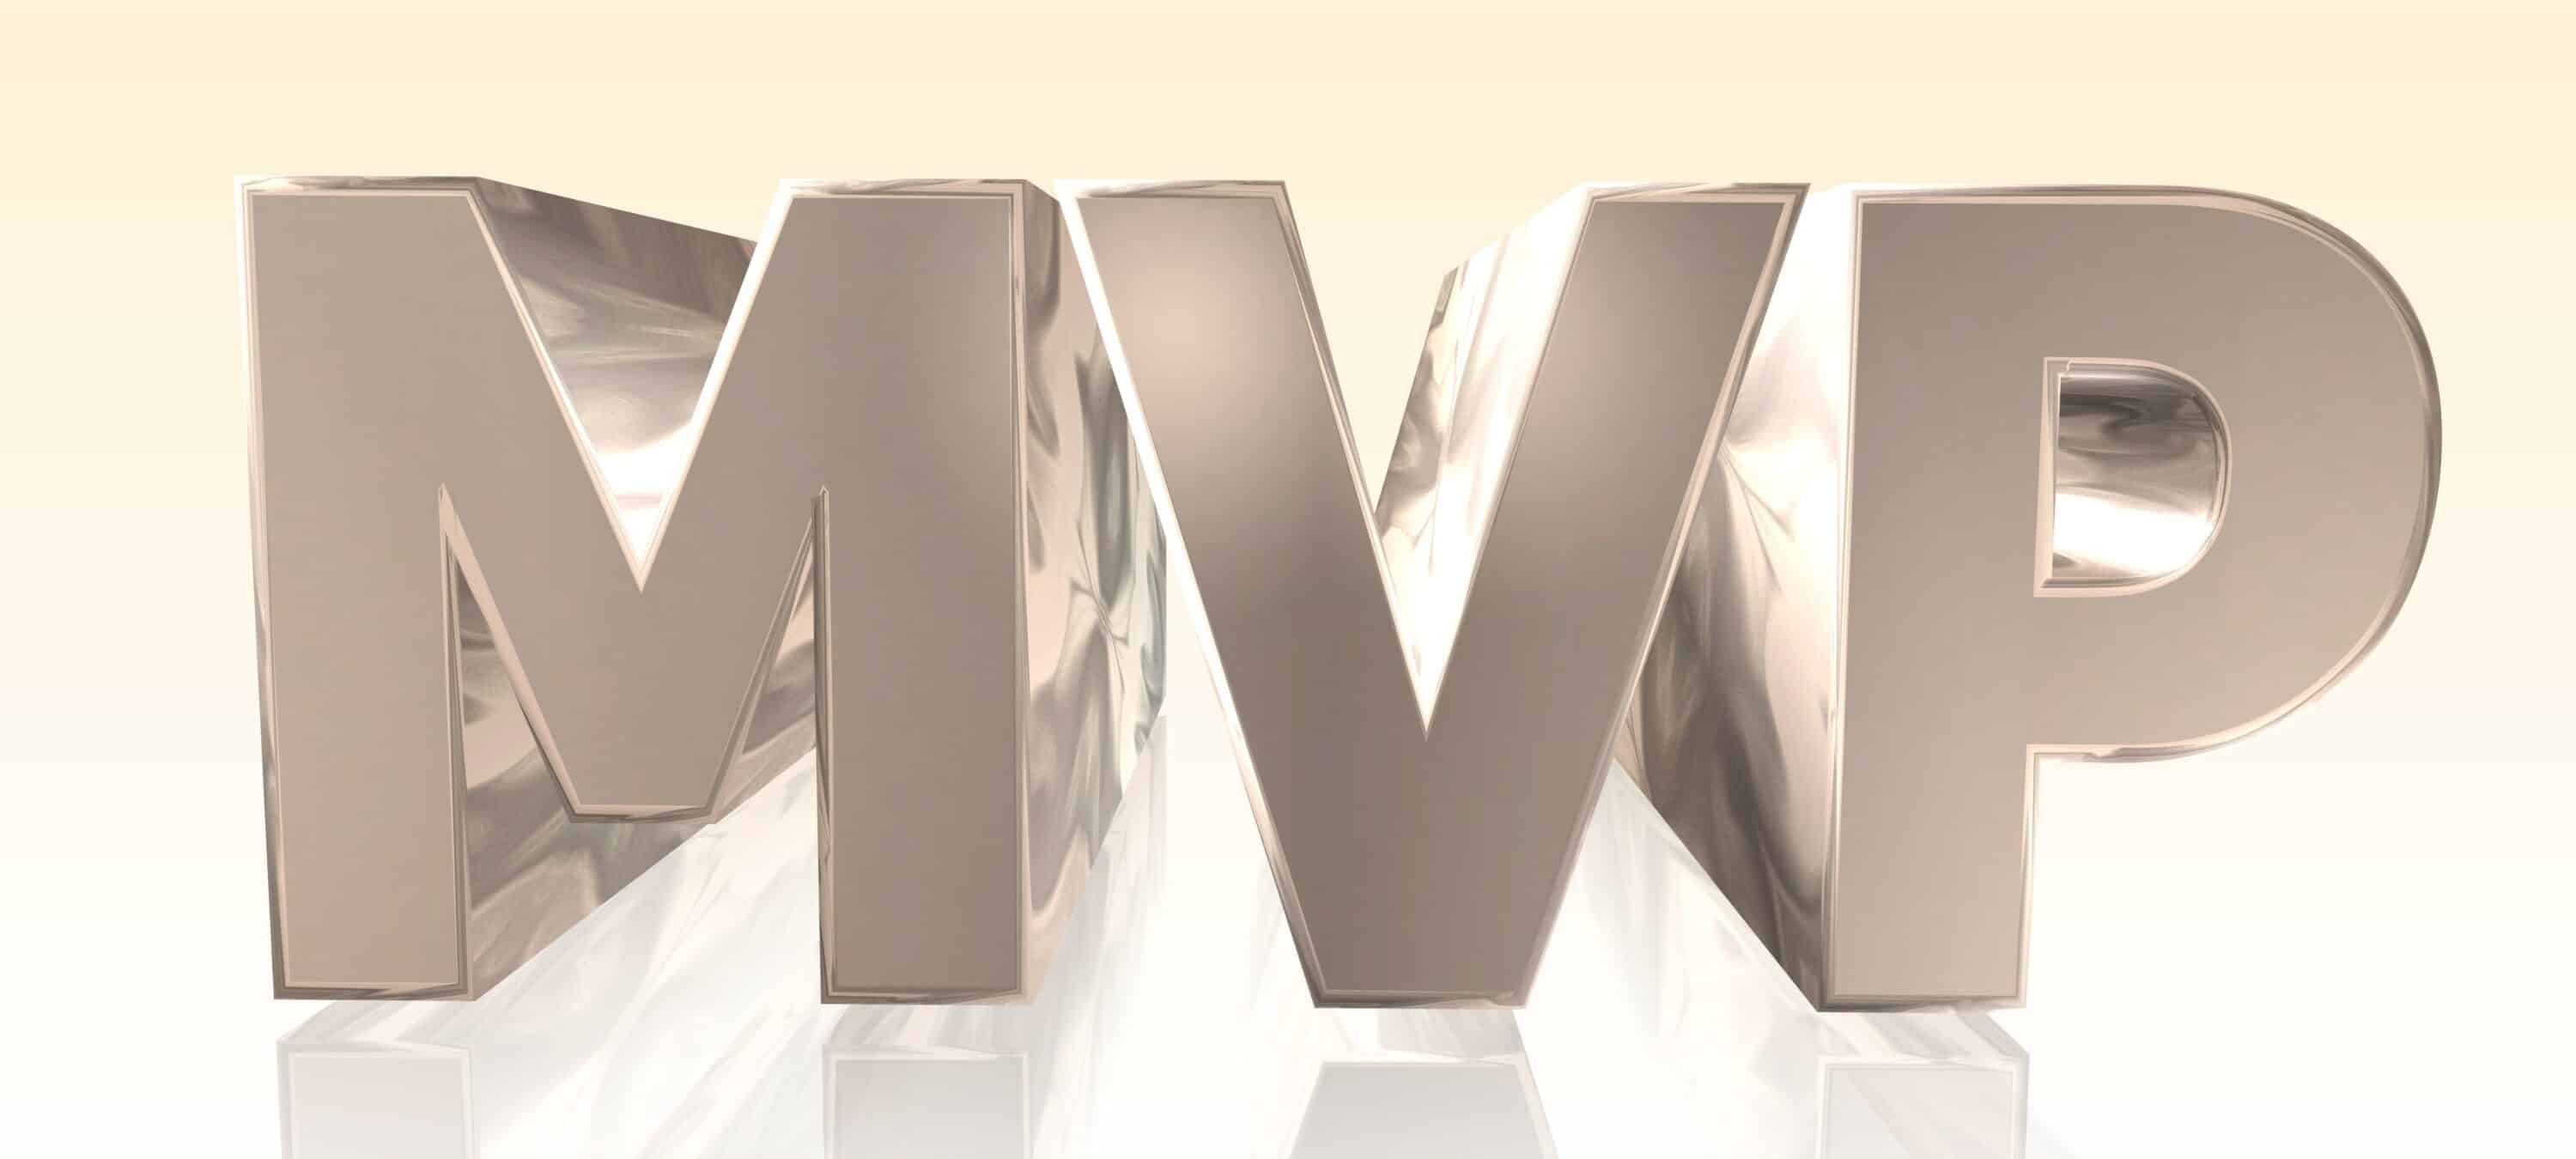 Letter branding design mvp logo Royalty Free Vector Image